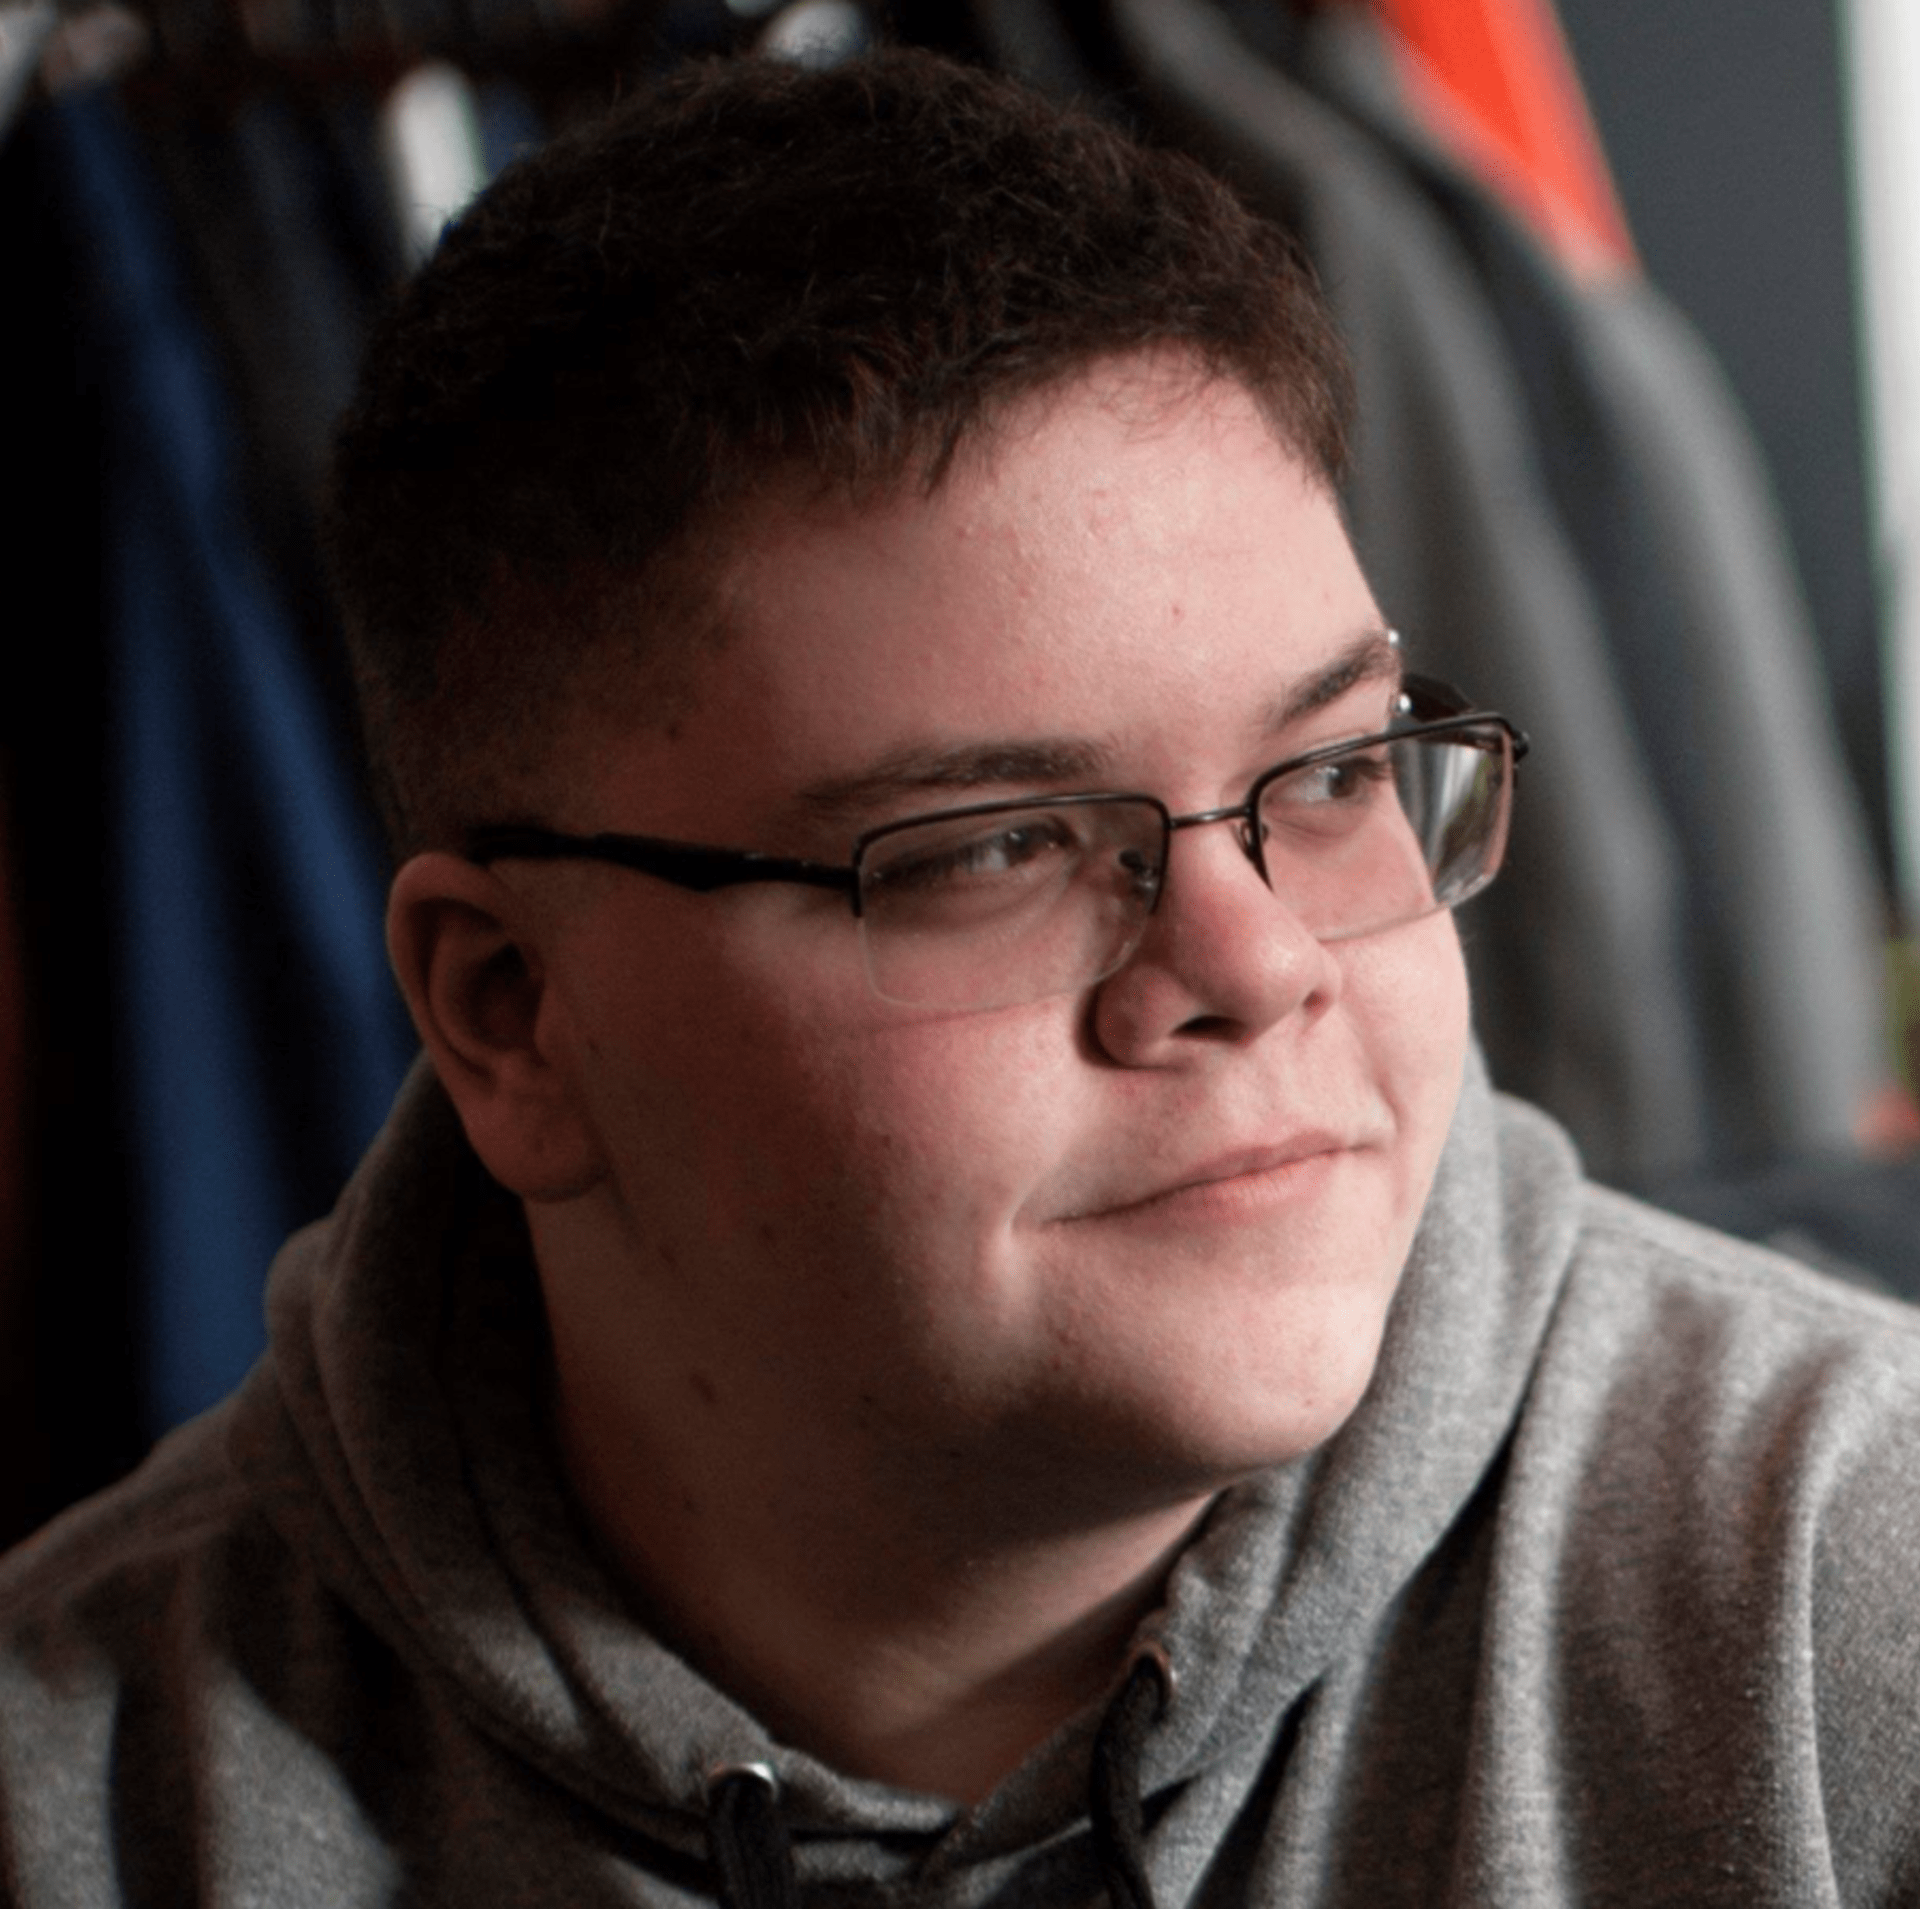 Transgender chlapec zažaloval svou střední školu